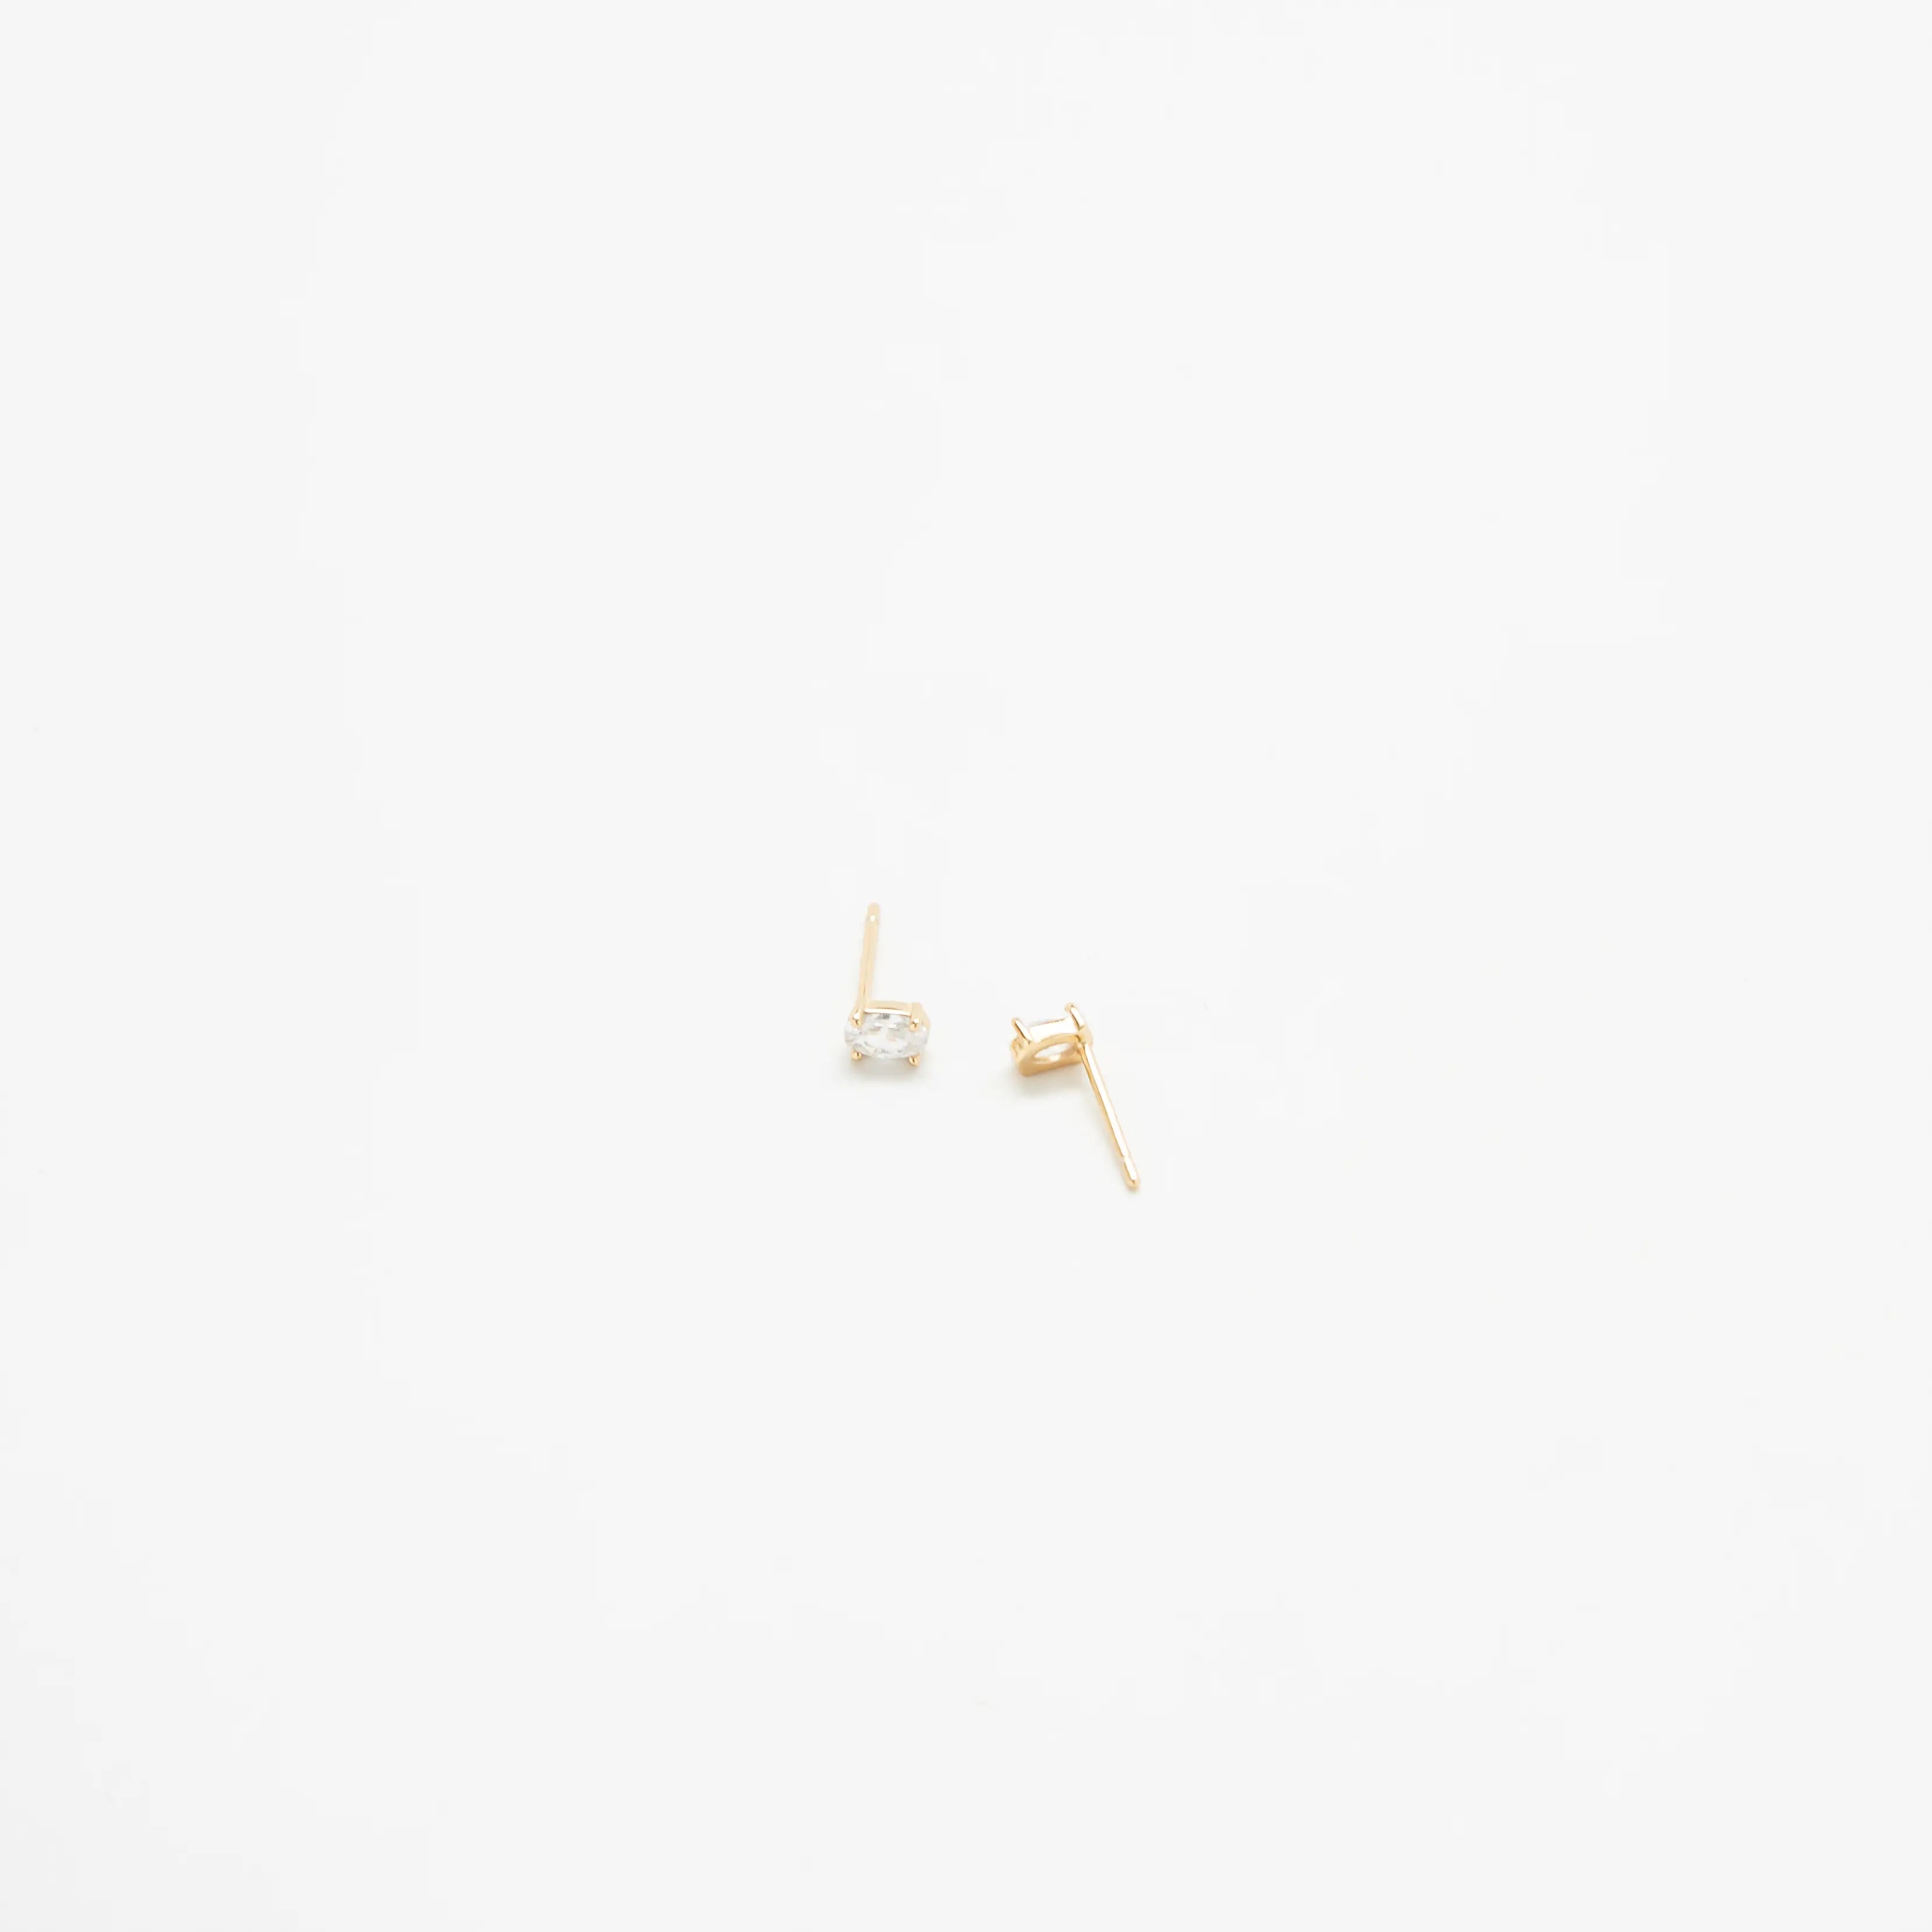 White CZ Oval Stud Earrings - Proper